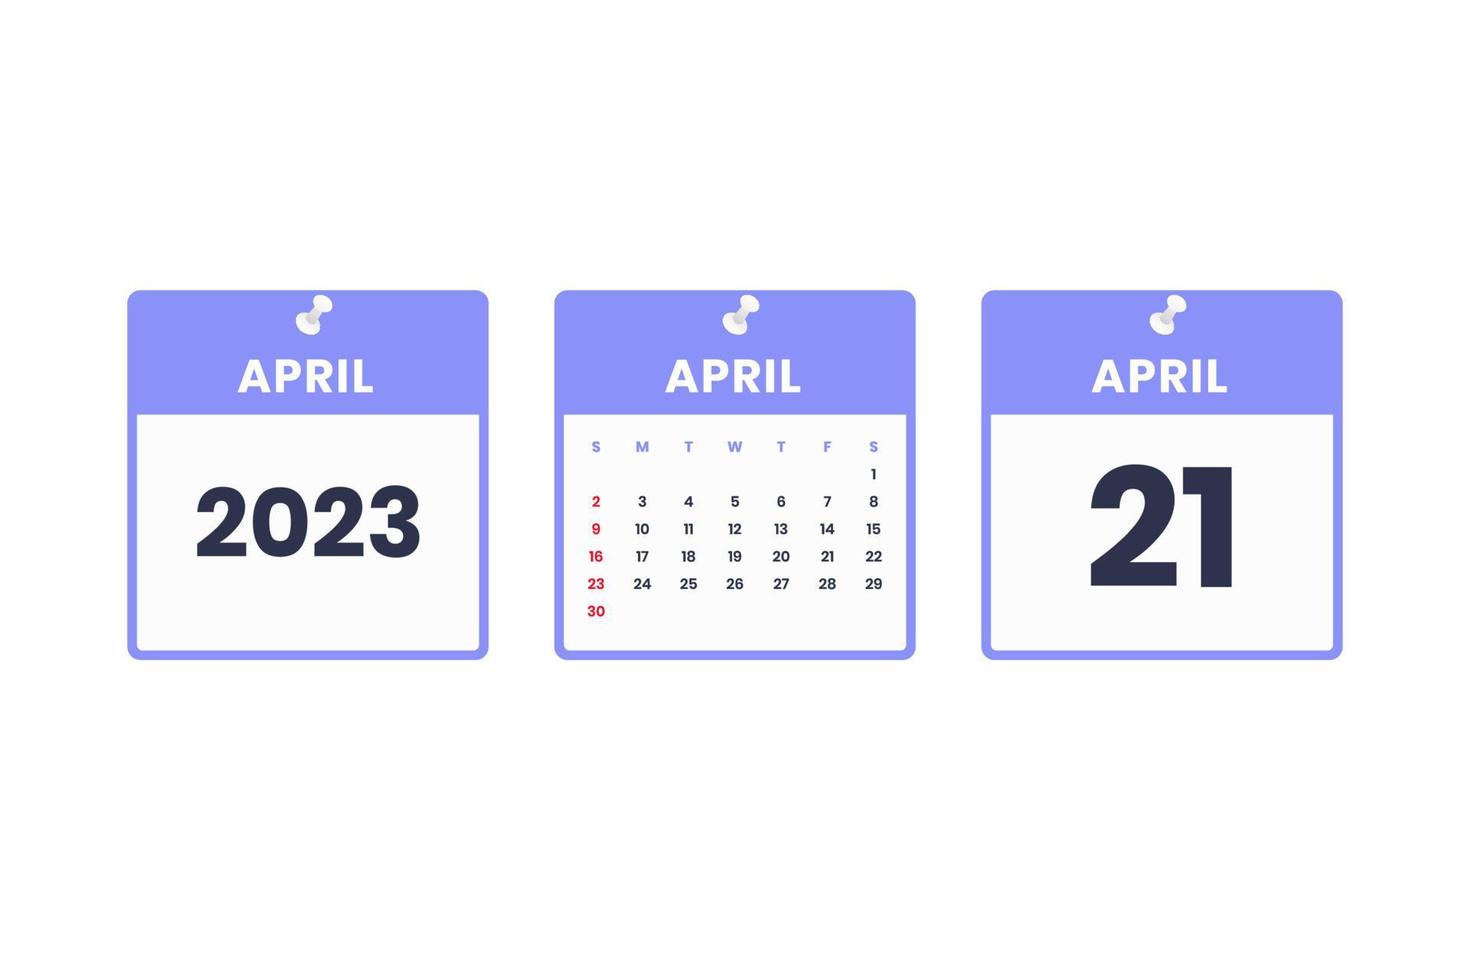 April calendar design. April 21 2023 calendar icon for schedule, appointment, important date concept vector